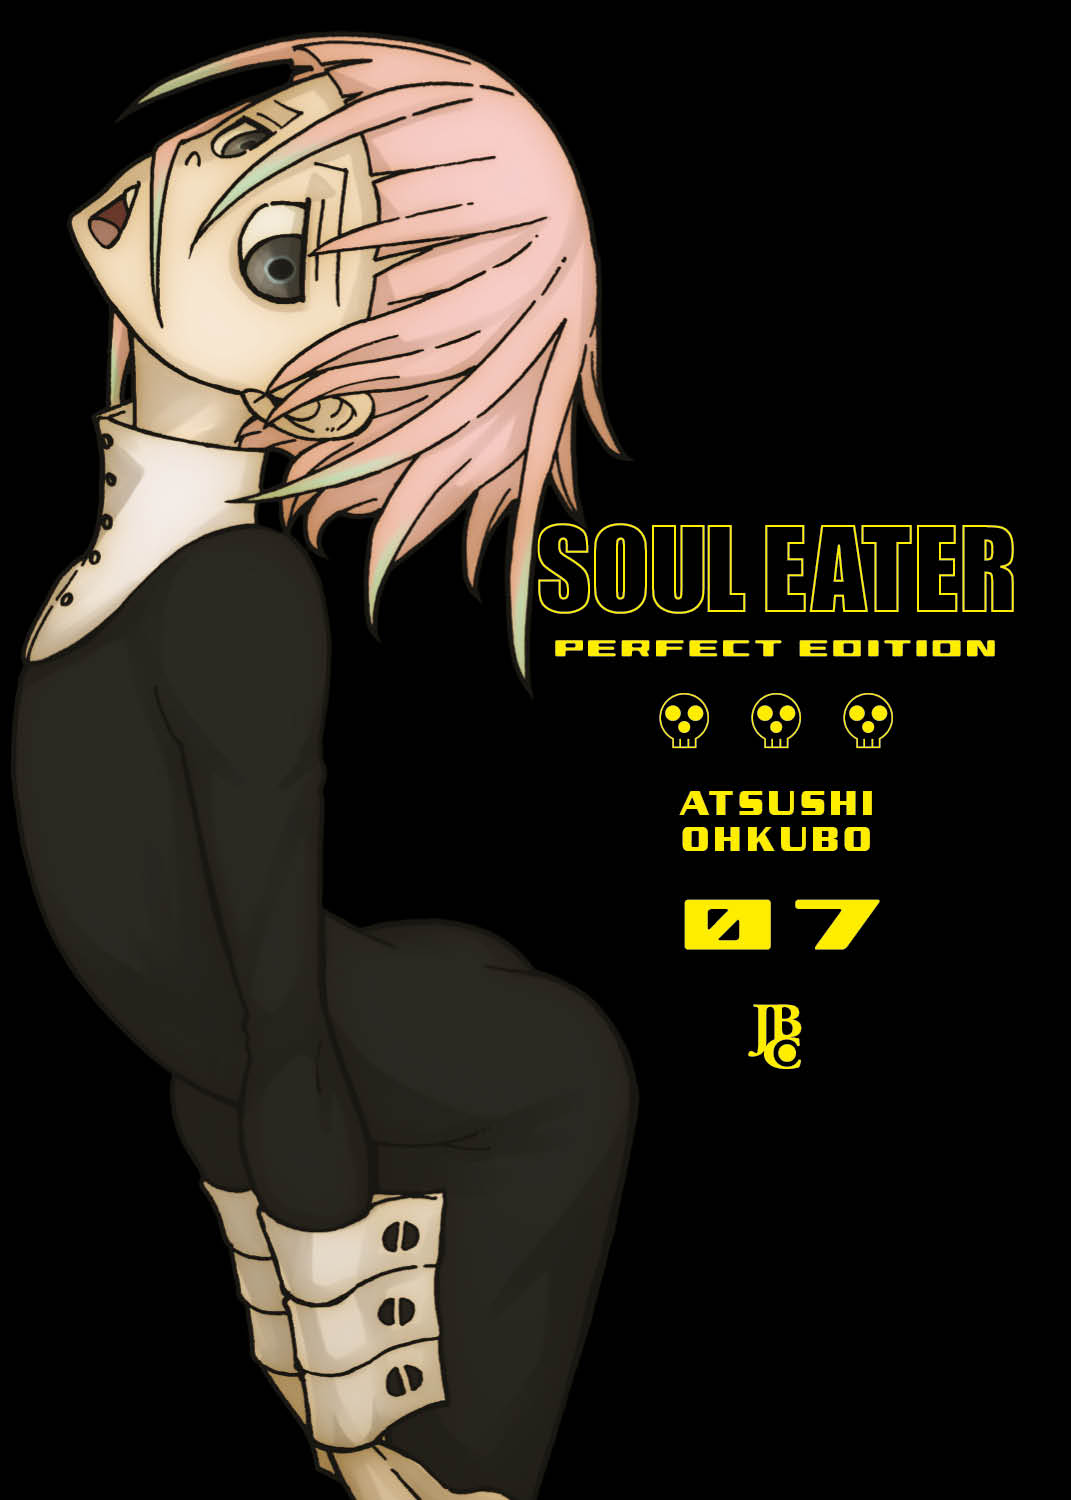 Histórico - Os 20 personagens mais populares de Soul Eater